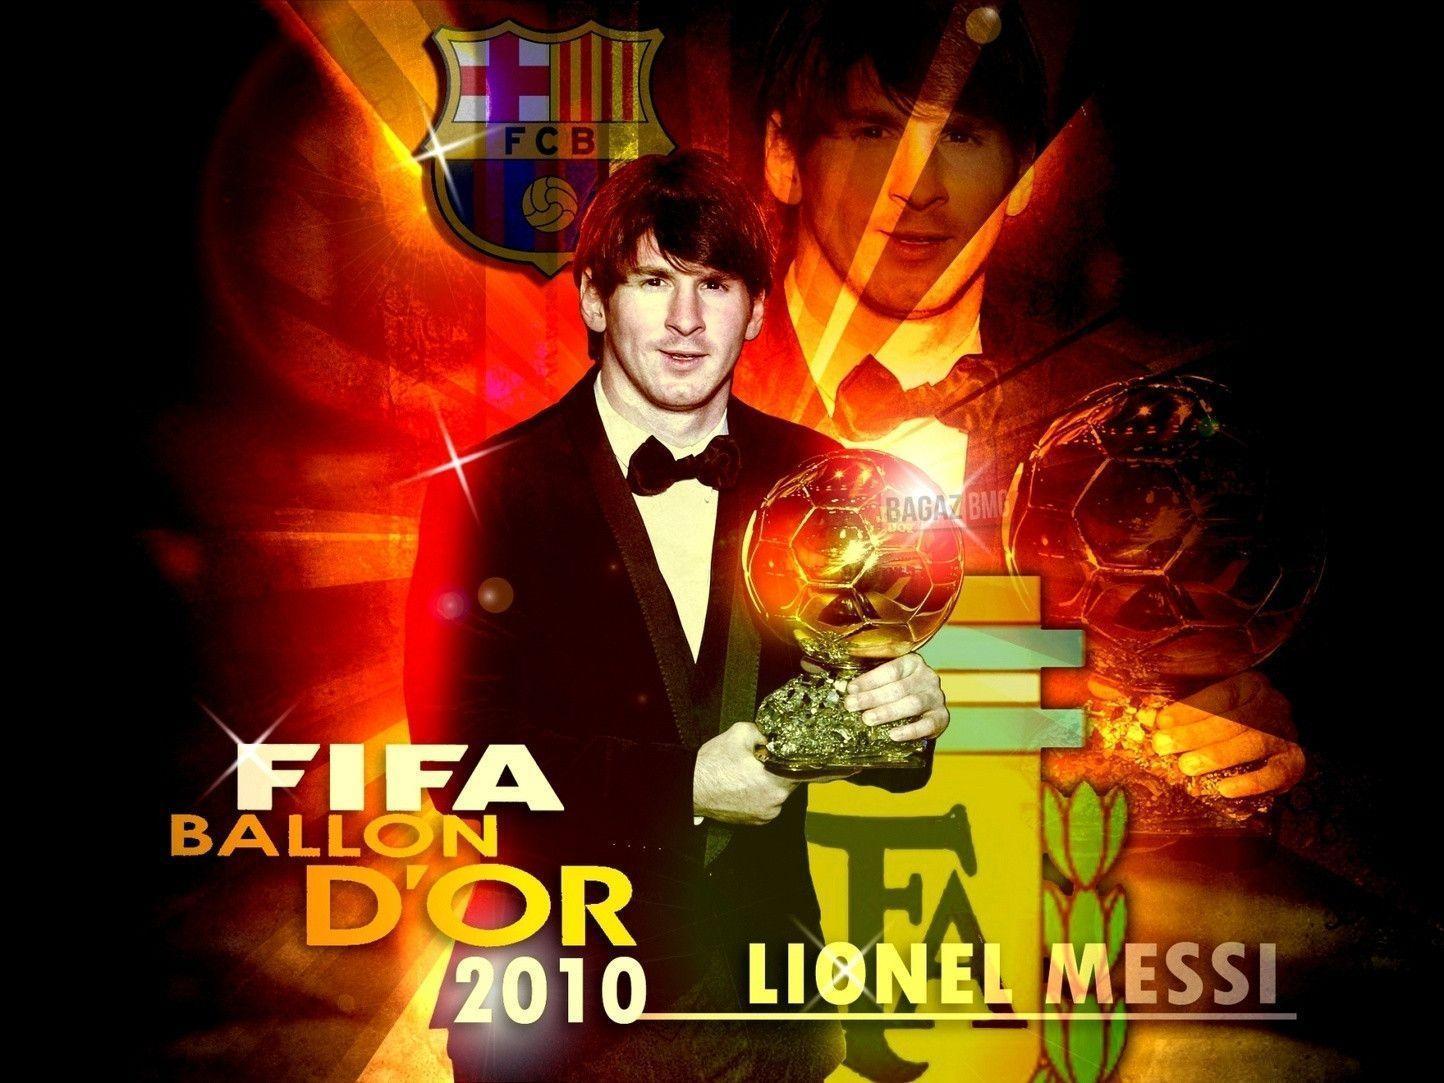 Lionel Messi FIFA Ballon d'Or 2010 Wallpaper Andres